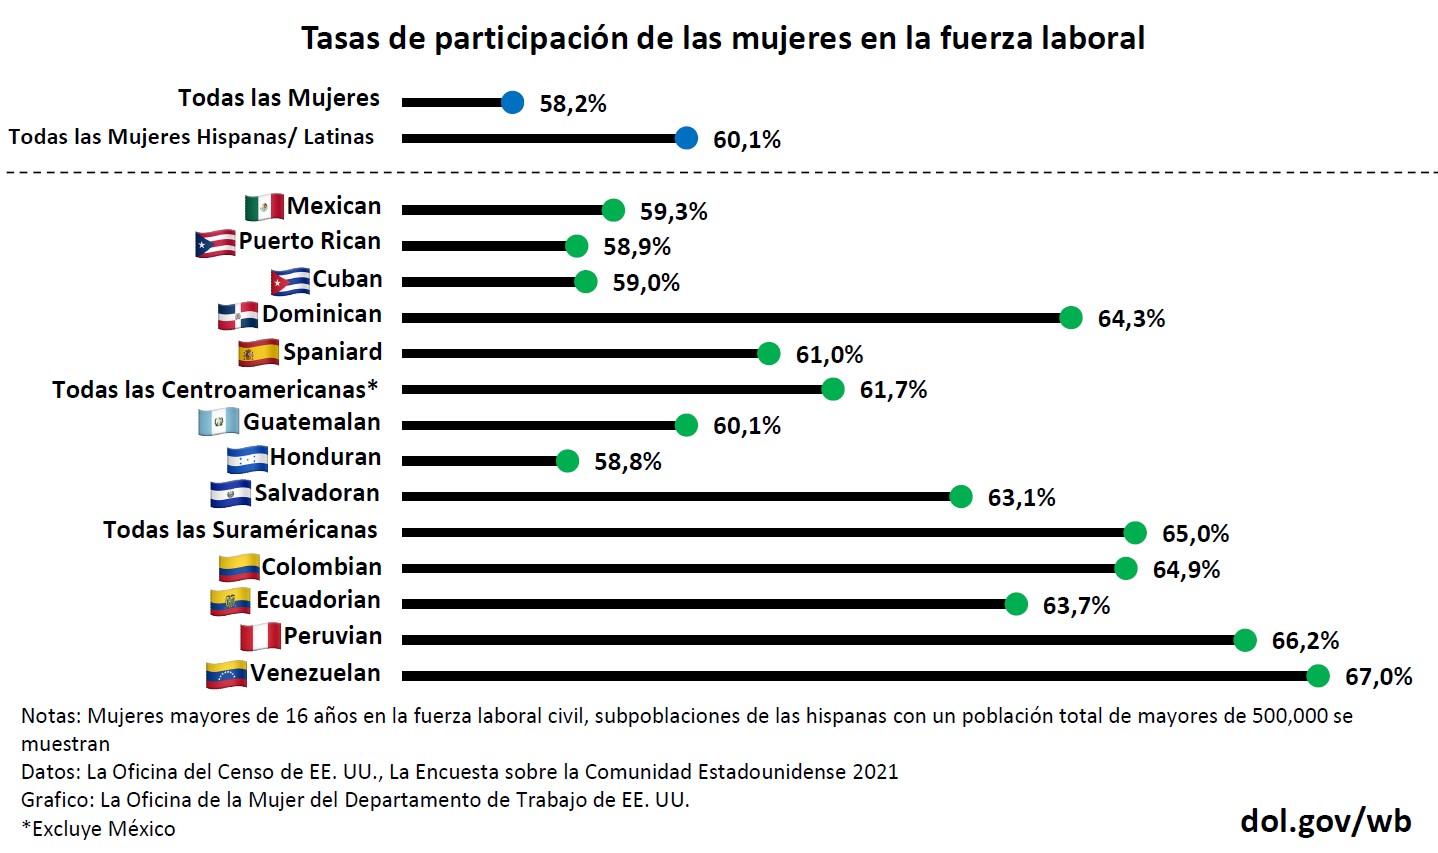 Tasas de participación para las mujeres (25+) en la fuerza laboral civil entre las subpoblaciones de las hispanas. Solamente subpoblaciones hispanas con un población total de mayores de 500,000 se muestran. Este dato es de la Oficina del Censo de EE. UU. Encuesta sobre la Comunidad Estadounidense en 2021.